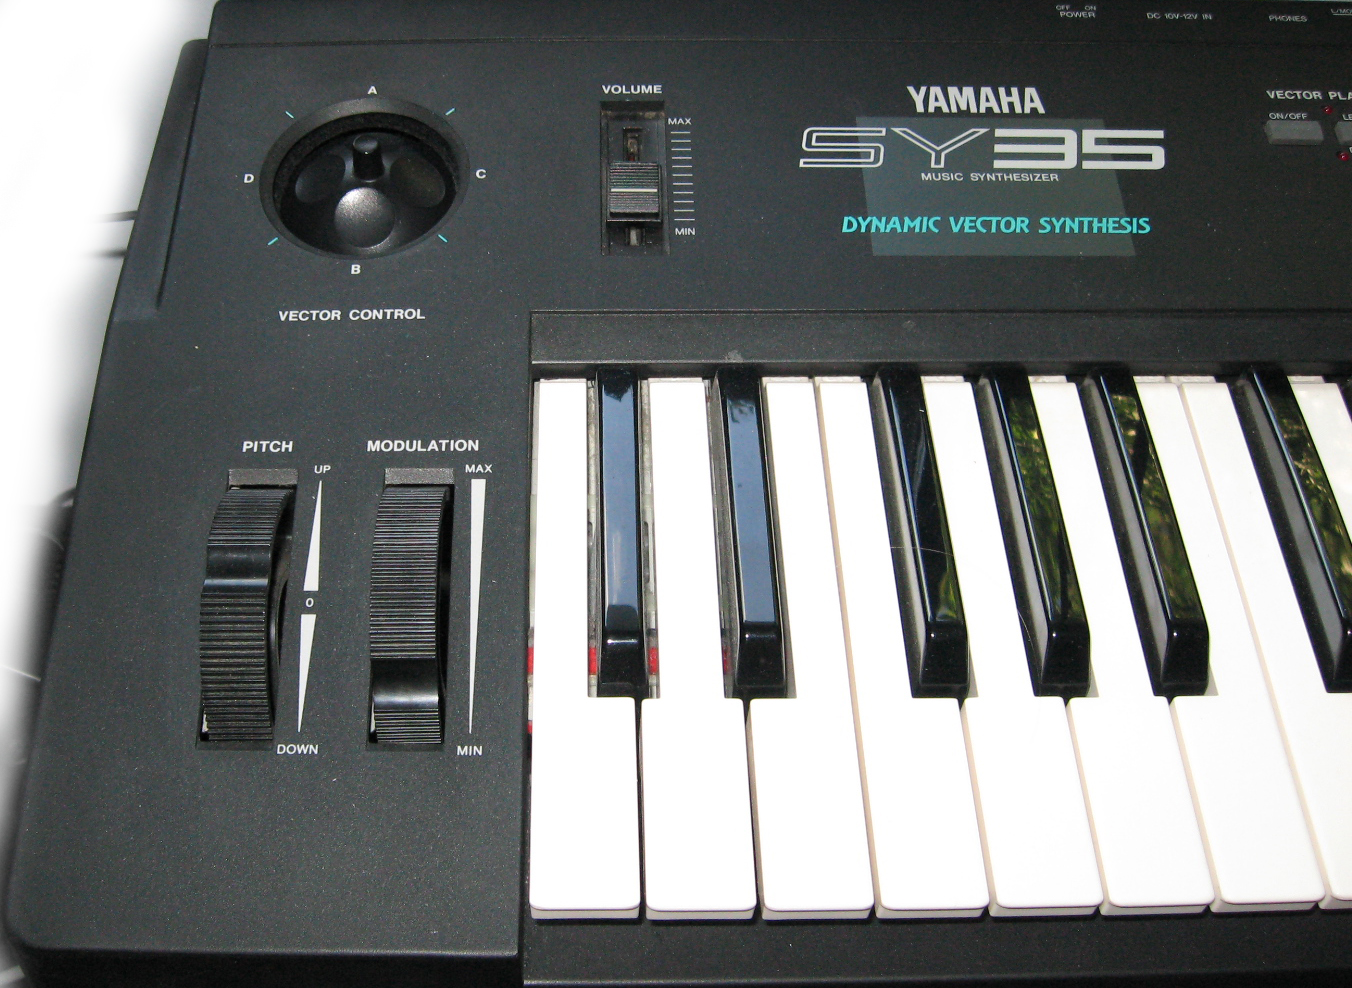 Yamaha SY-35